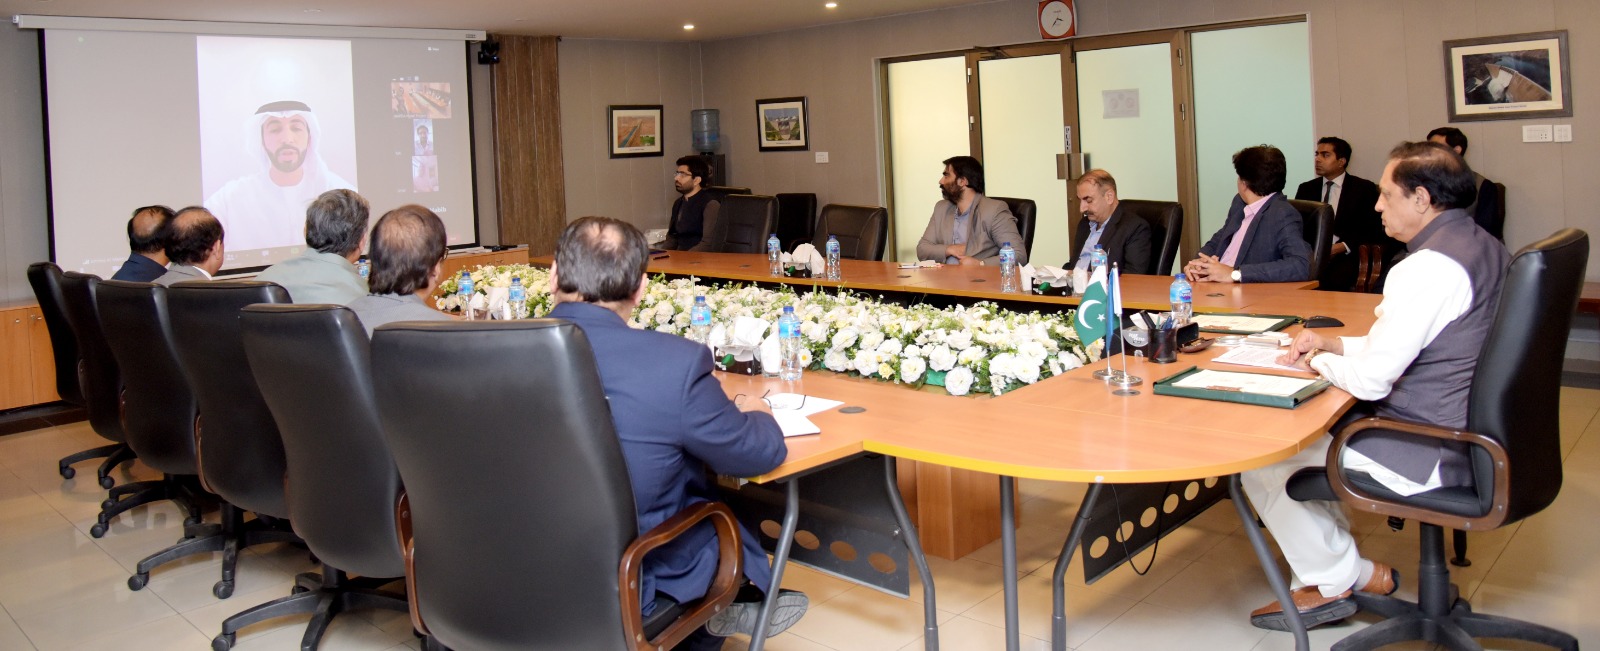 WAPDA, UAE group make strategic partnership to address Pakistan's energy crisis